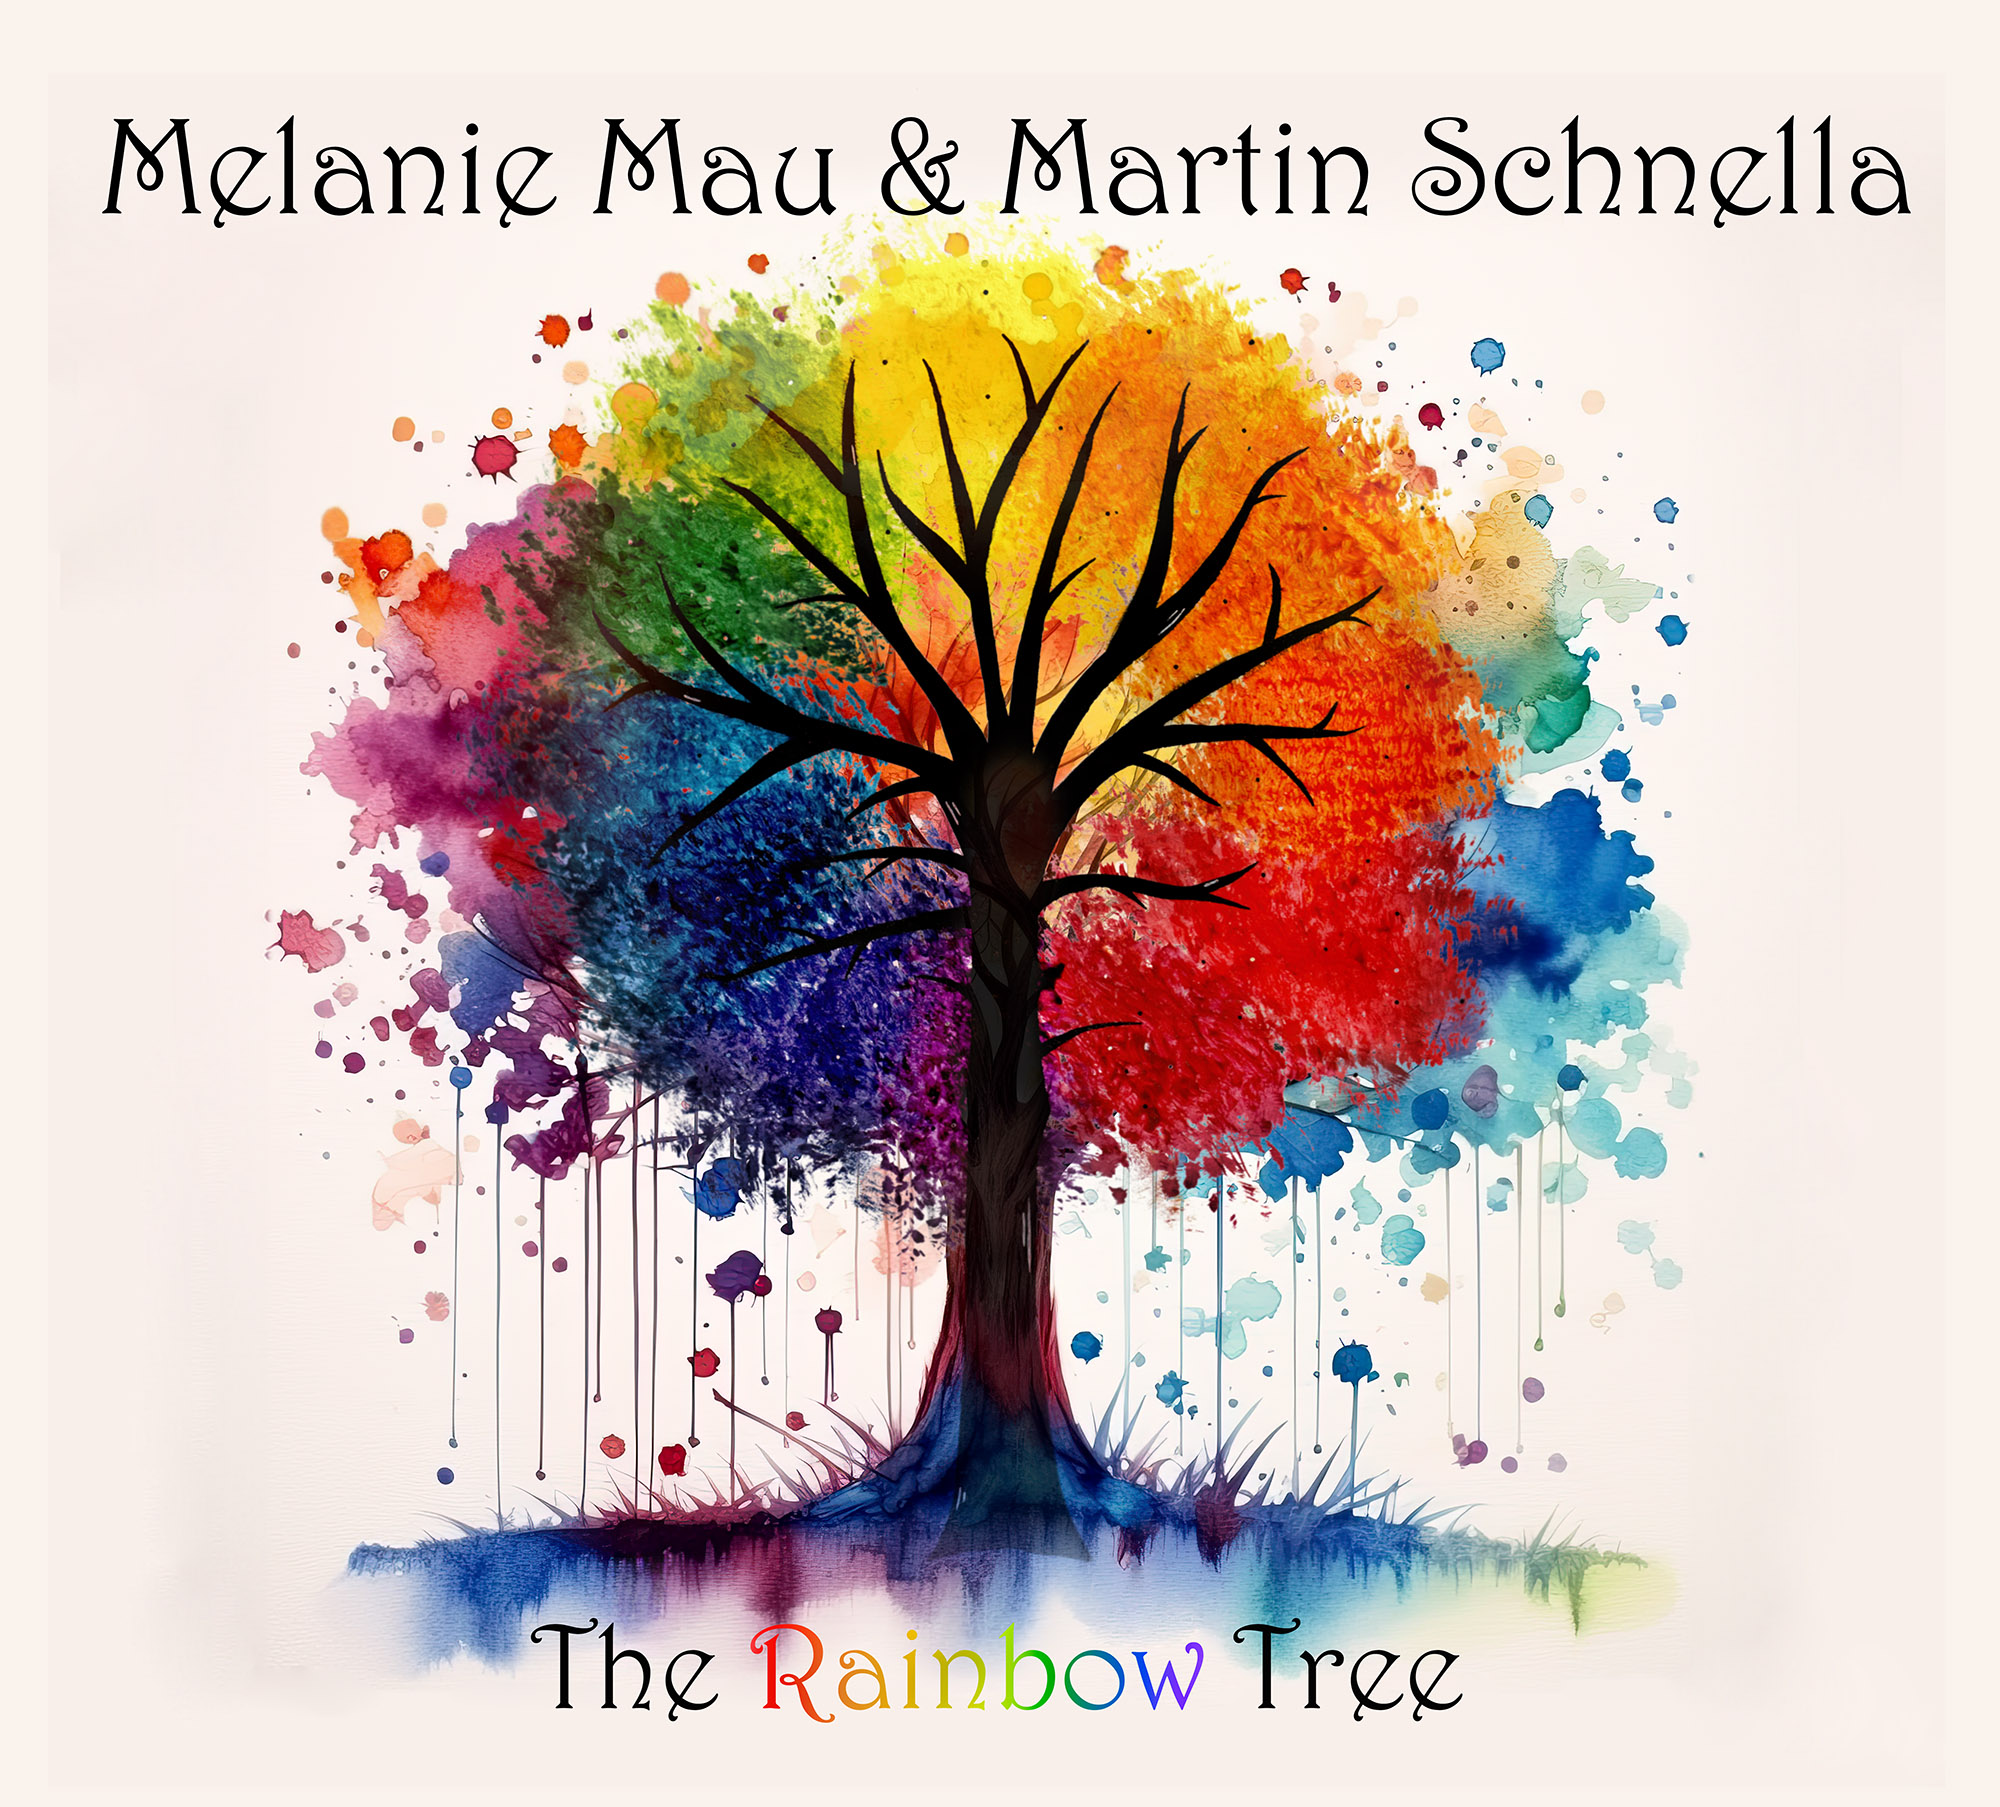 MELANIE MAU & MARTIN SCHNELLA – The Rainbow Tree